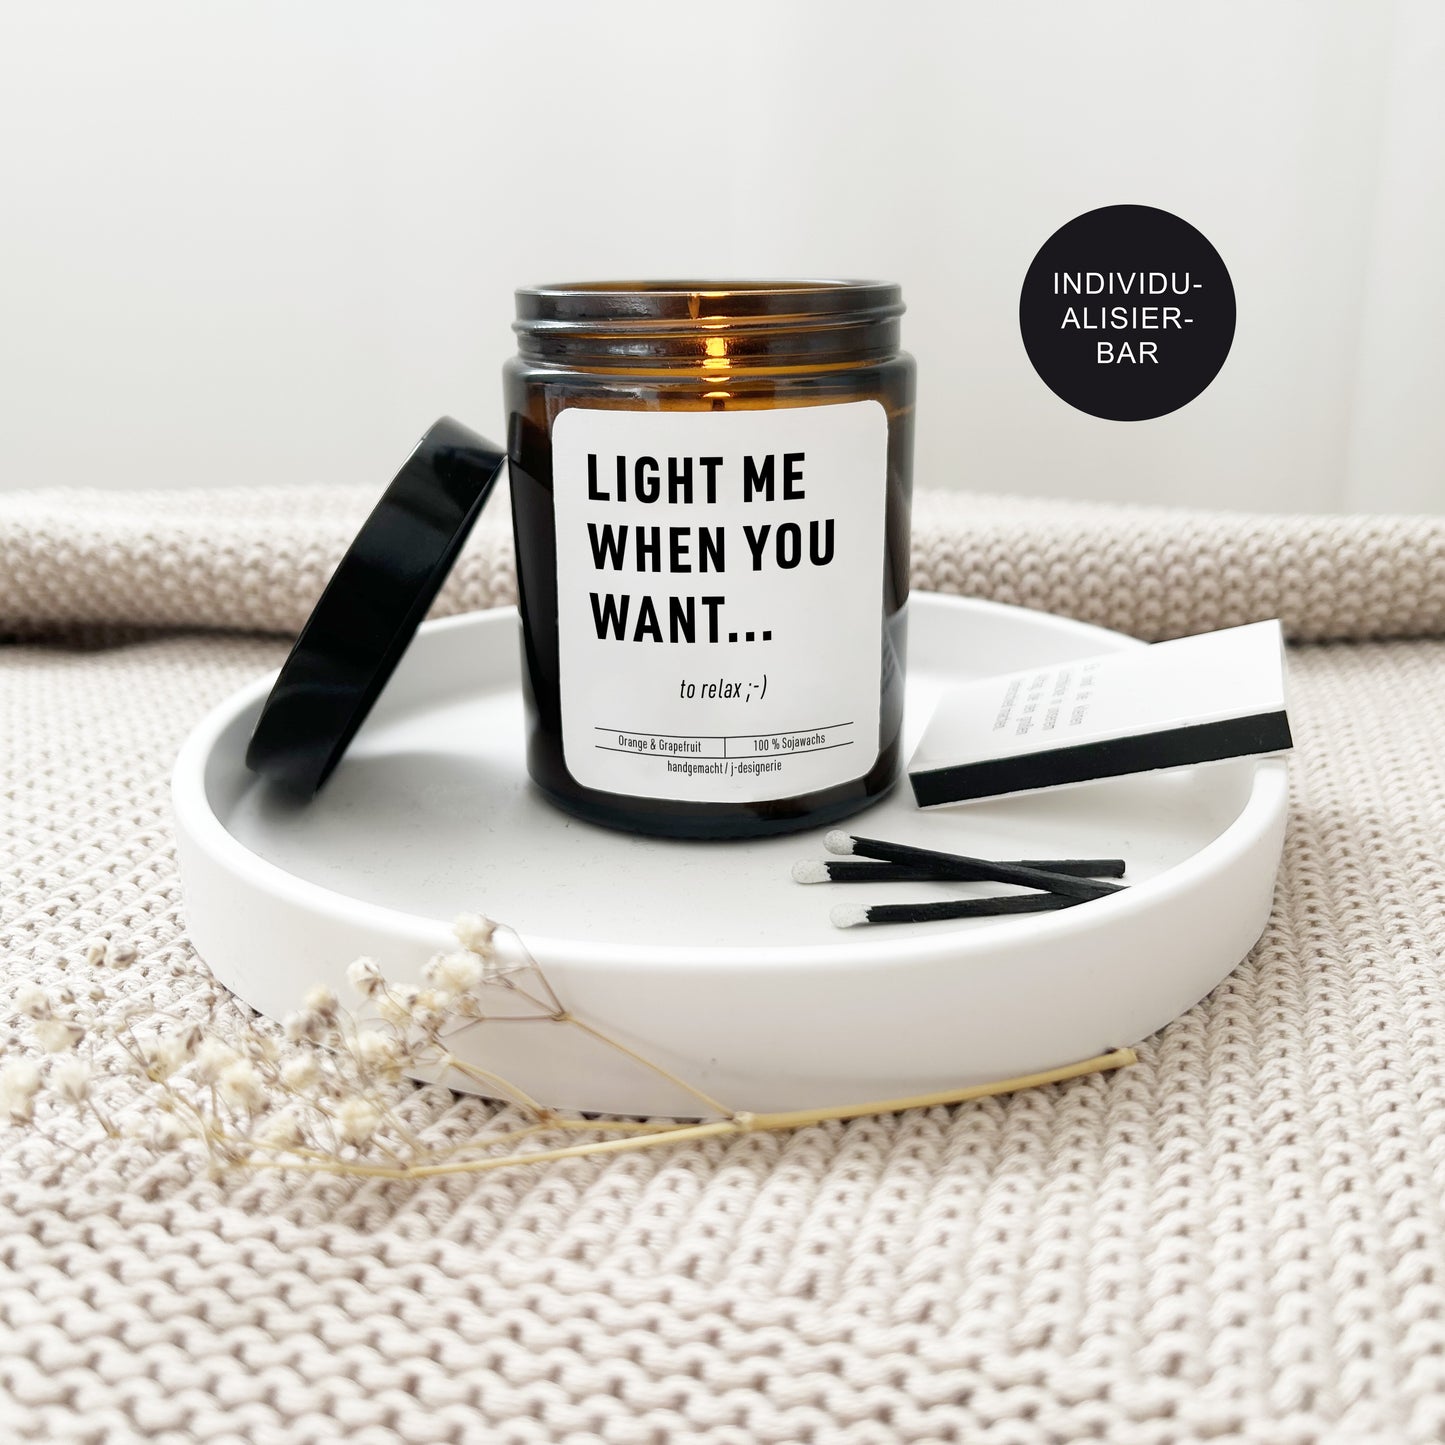 Lustige Kerze im Glas mit Spruch "Light me..." für den Partner, Freund(in), Ehemann oder Ehefrau als Geschenk zum Geburtstag u. Valentinstag